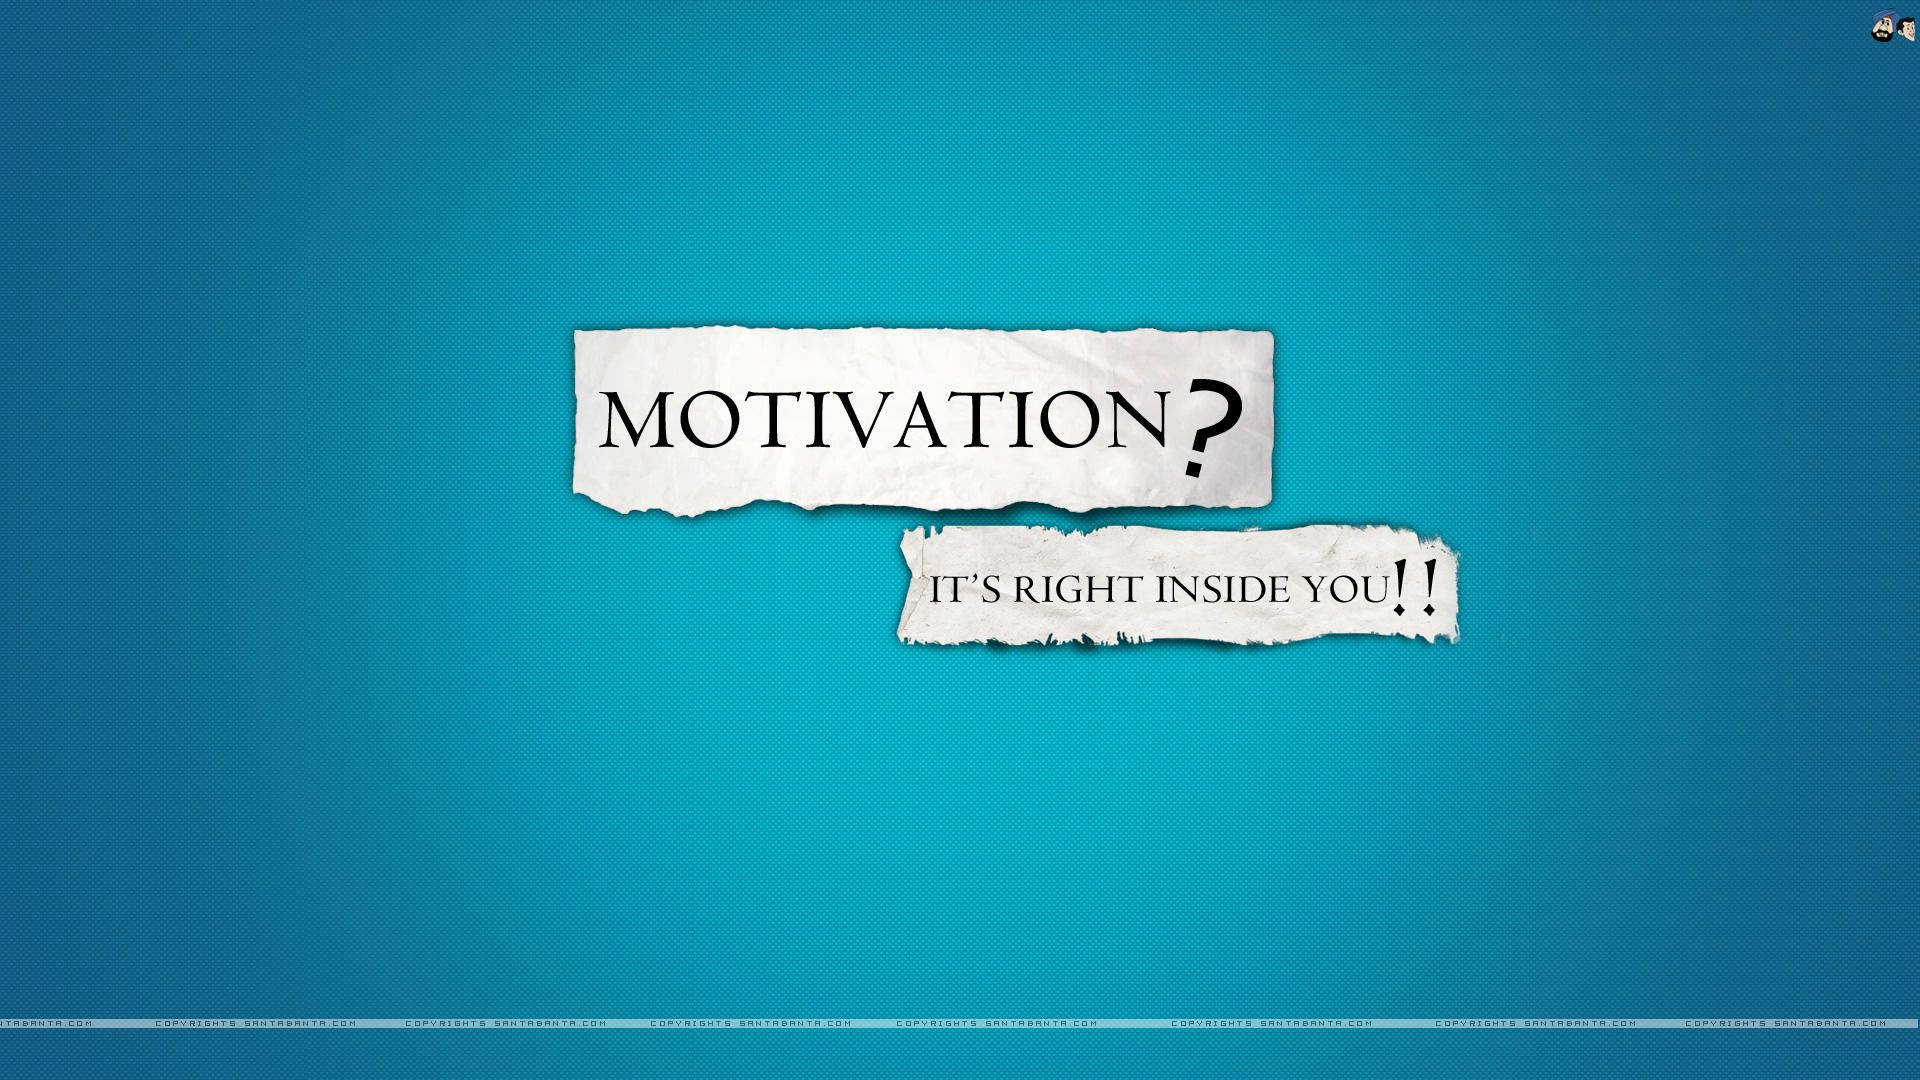 Free Motivational Hd Wallpaper Downloads, [100+] Motivational Hd Wallpapers  for FREE 